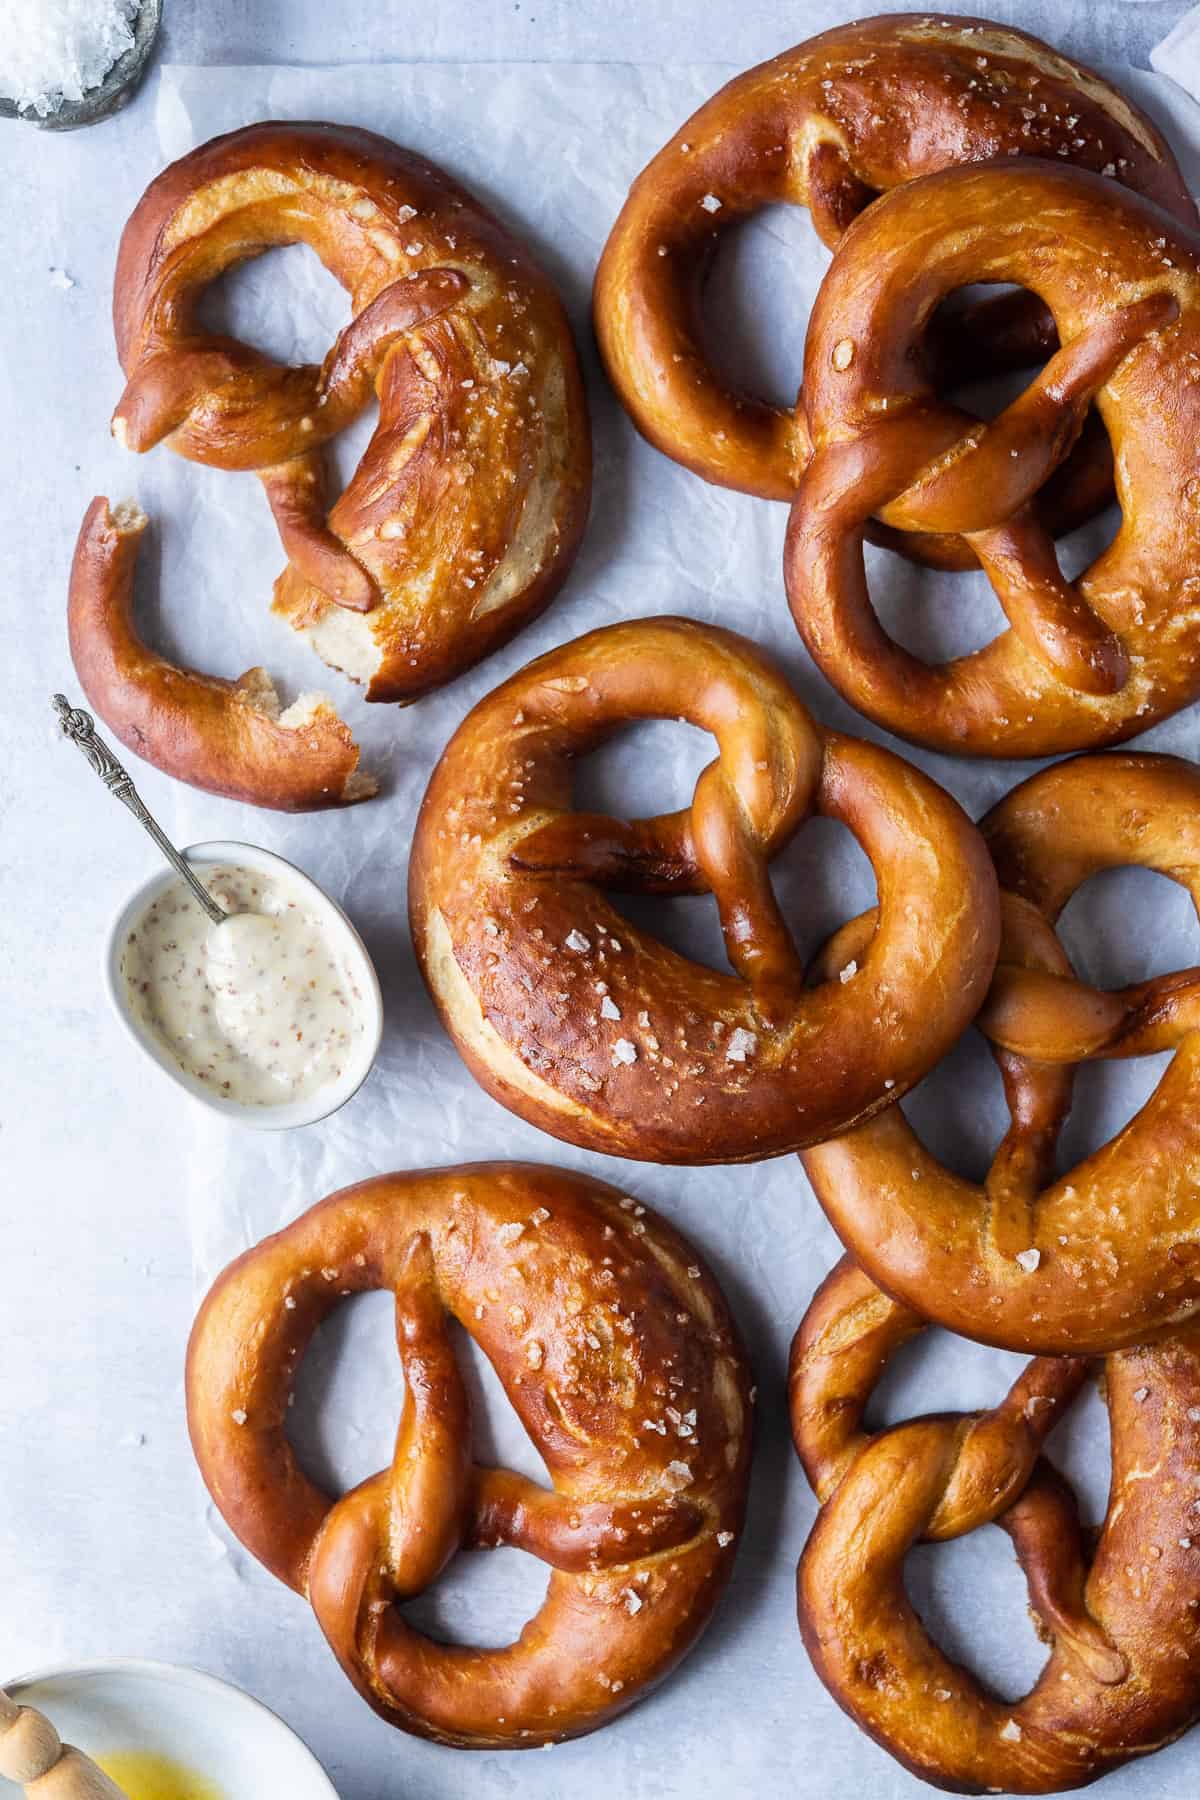 https://domesticgothess.com/wp-content/uploads/2020/07/vegan-beer-pretzels.jpg